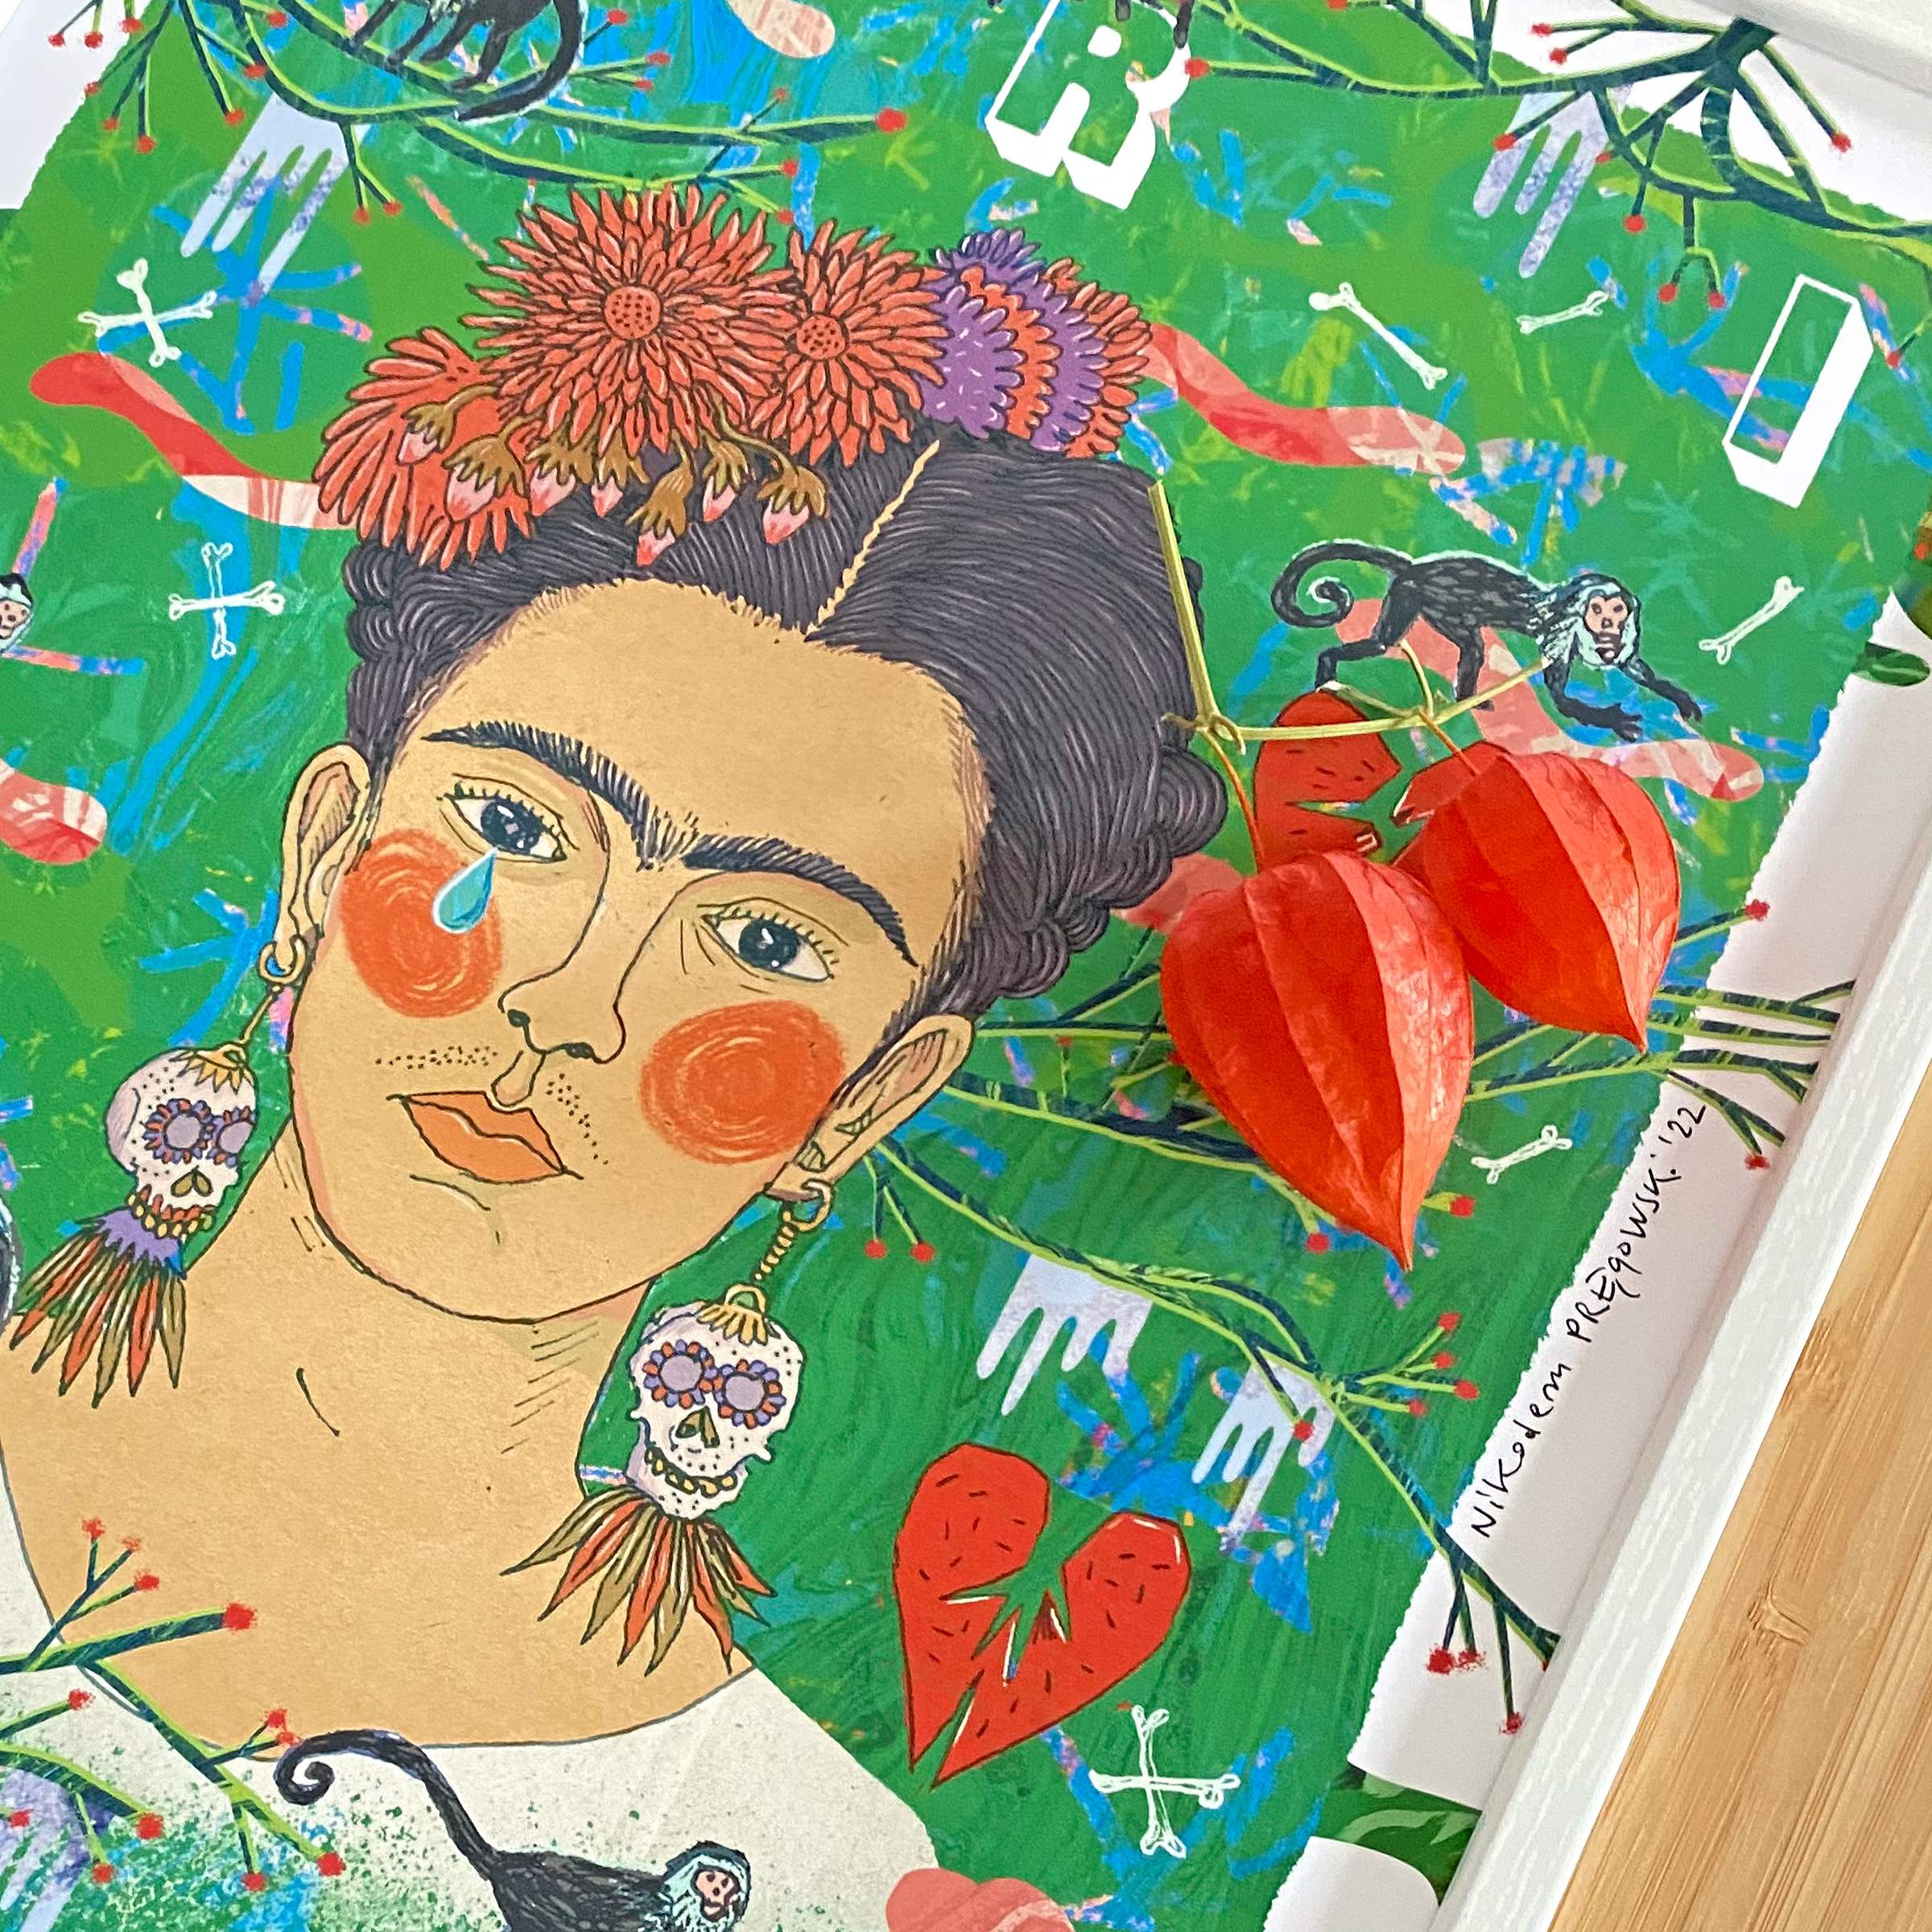 FRIDA Kahlo